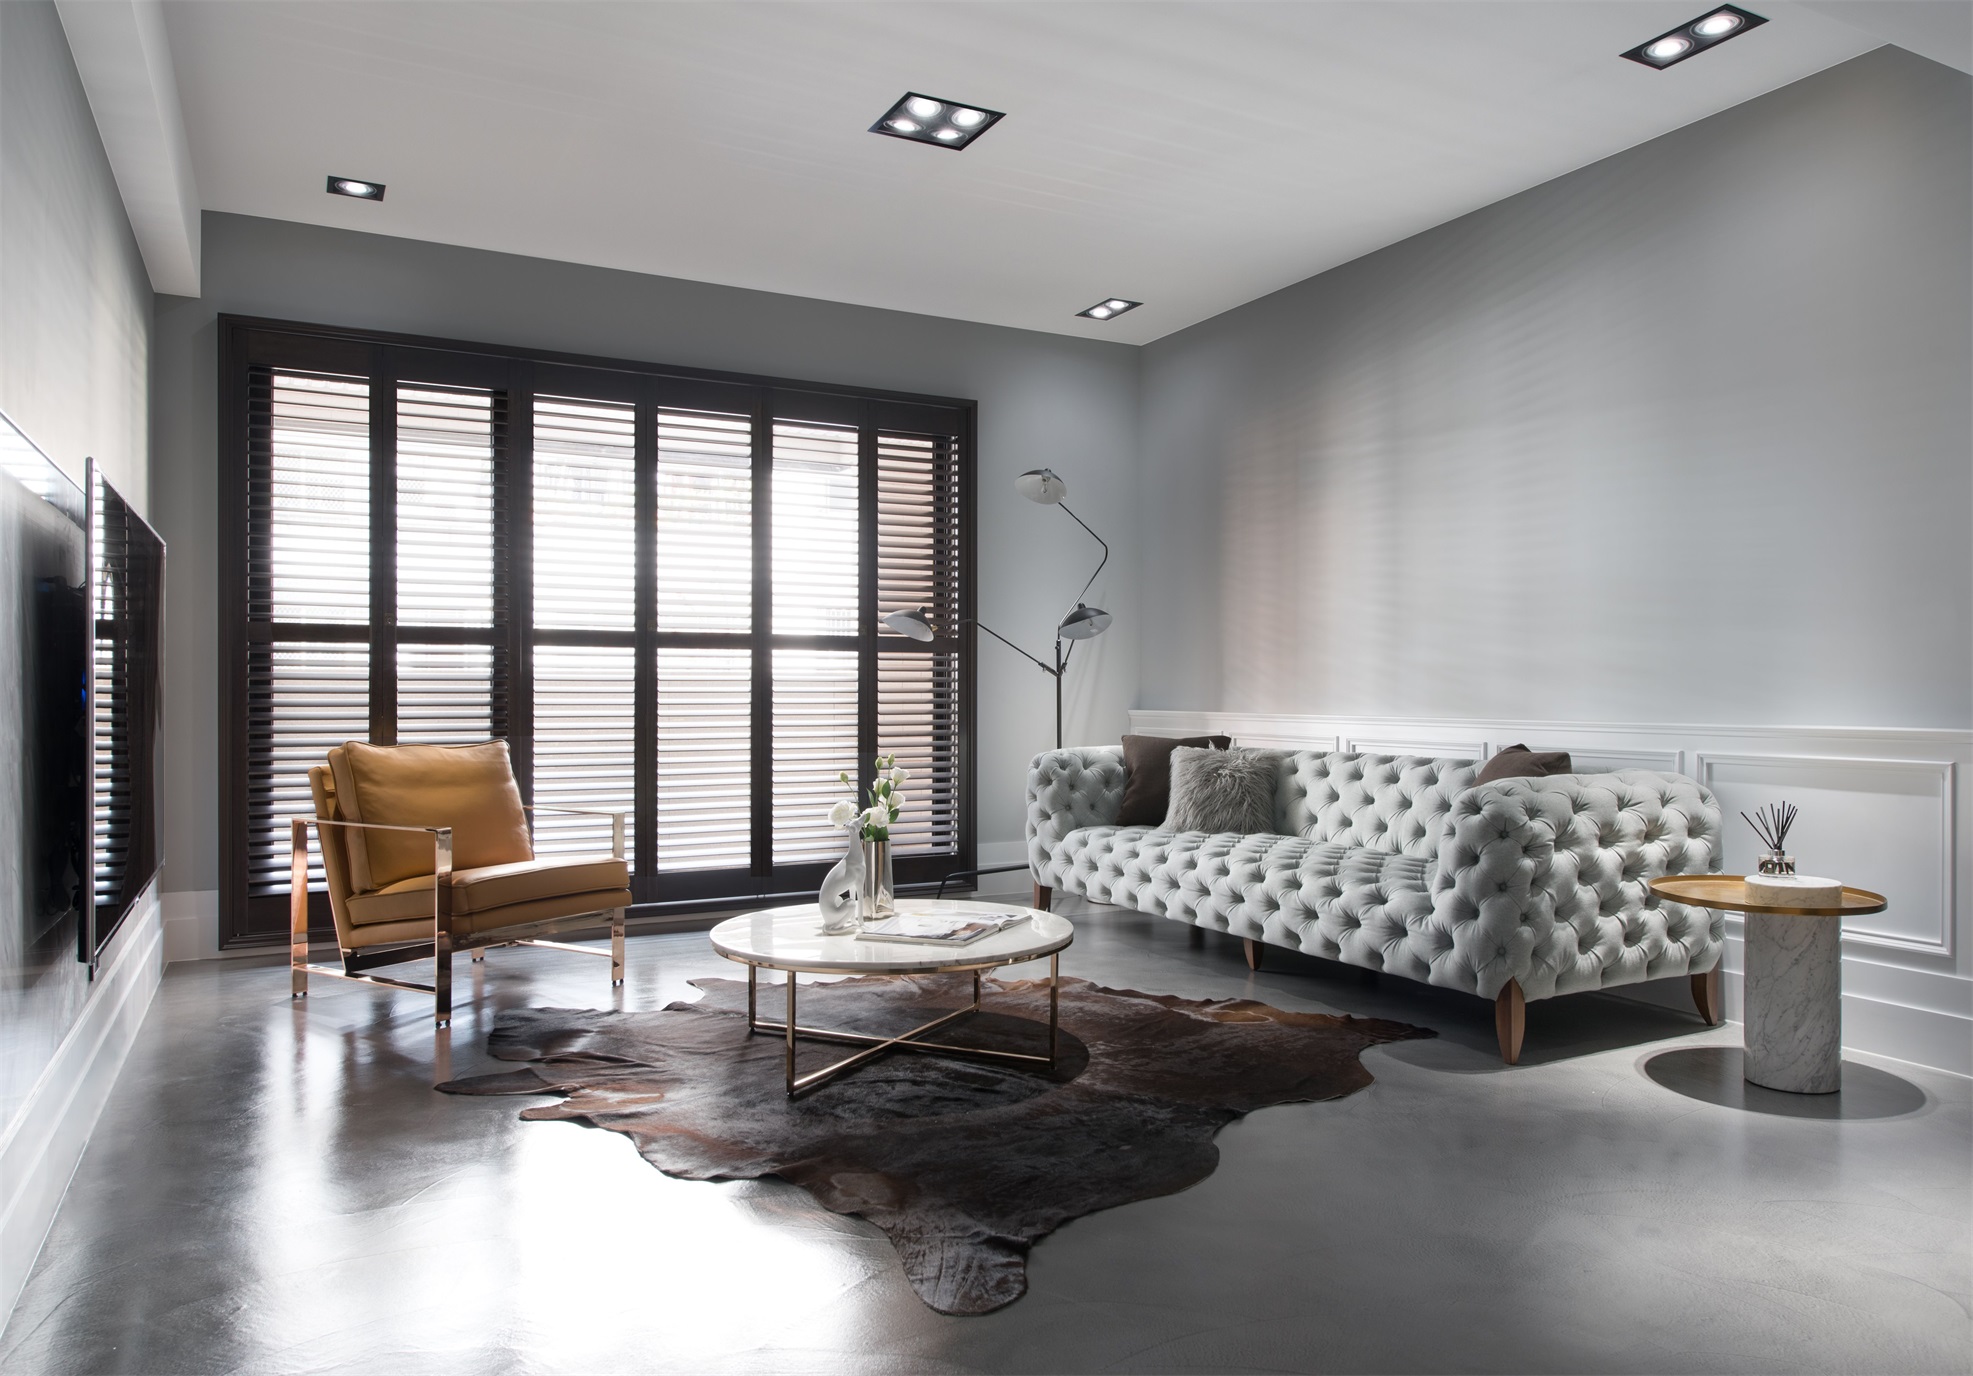 客厅大面积使用灰色为背景，搭配浅色家具，扩大了空间感，简约时尚。